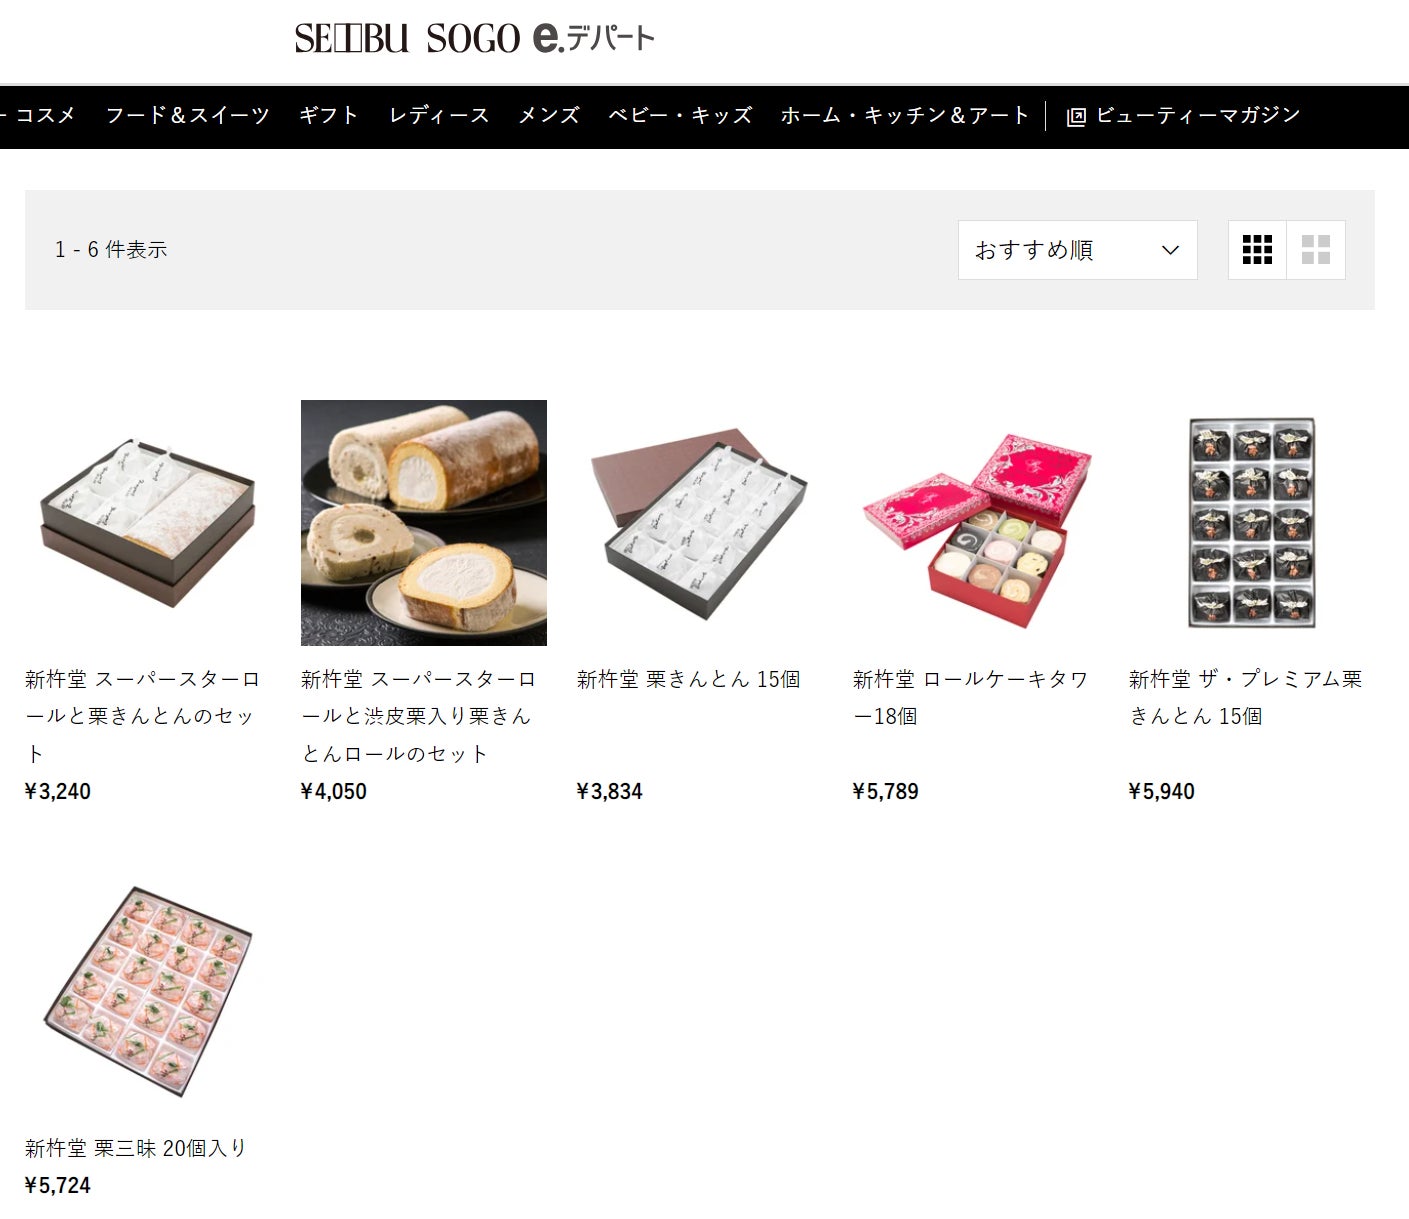 【新杵堂】そごう・西武が運営するオンラインショッピングサイト「e.デパート」での販売を開始